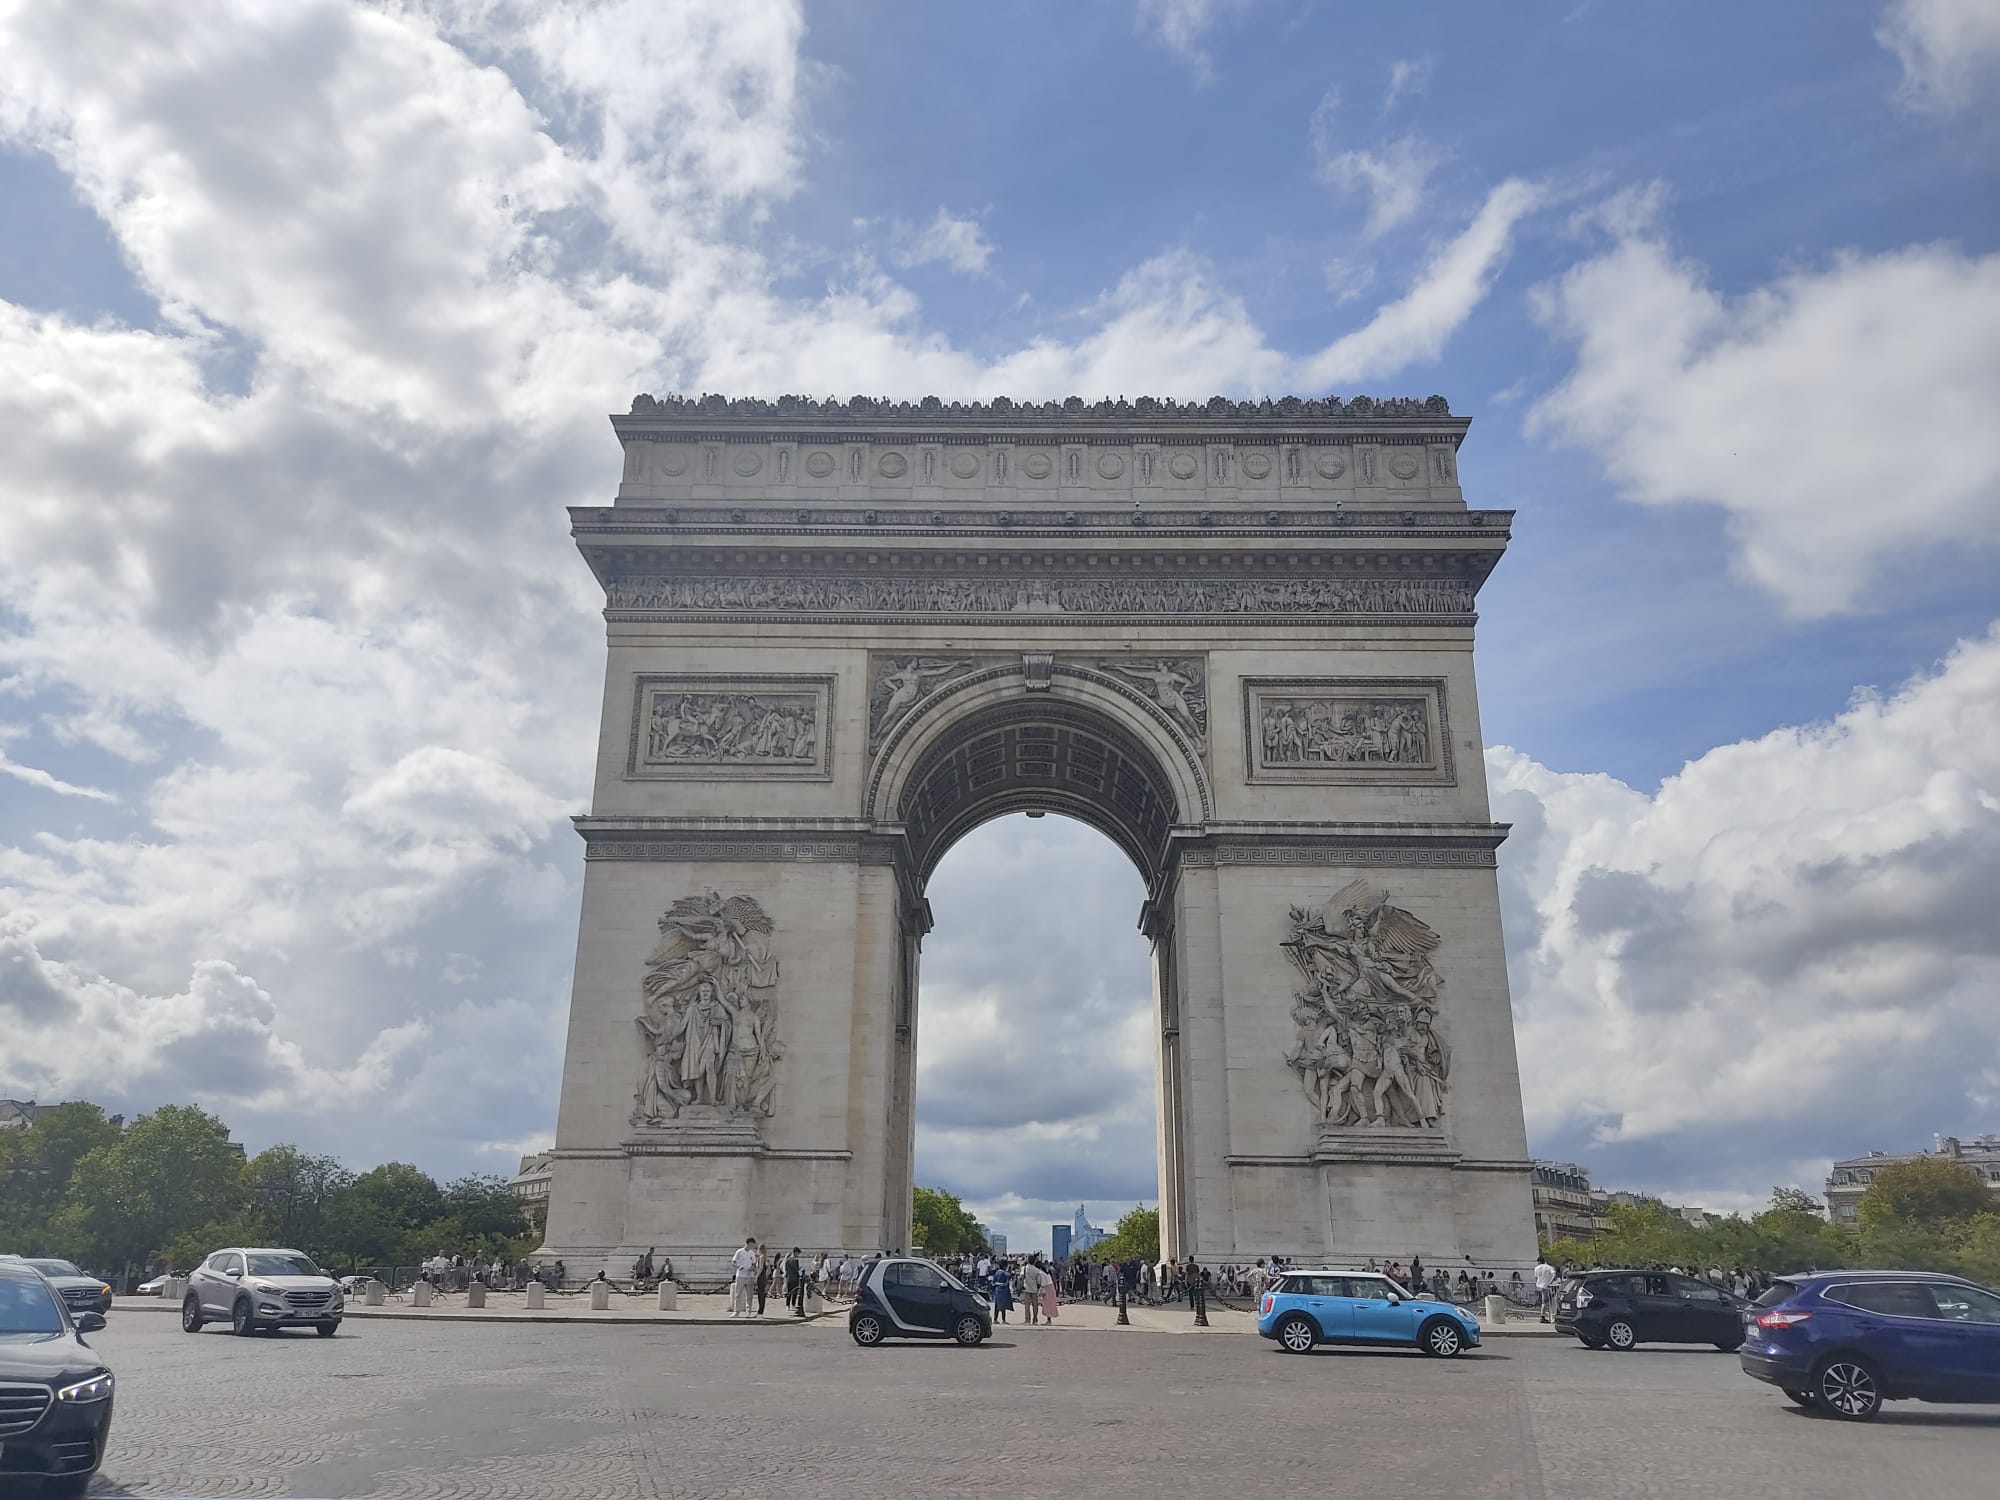 Cosa vedere a Parigi - Arco di Trionfo (foto D. Cuomo - NonSoloRisparmio)